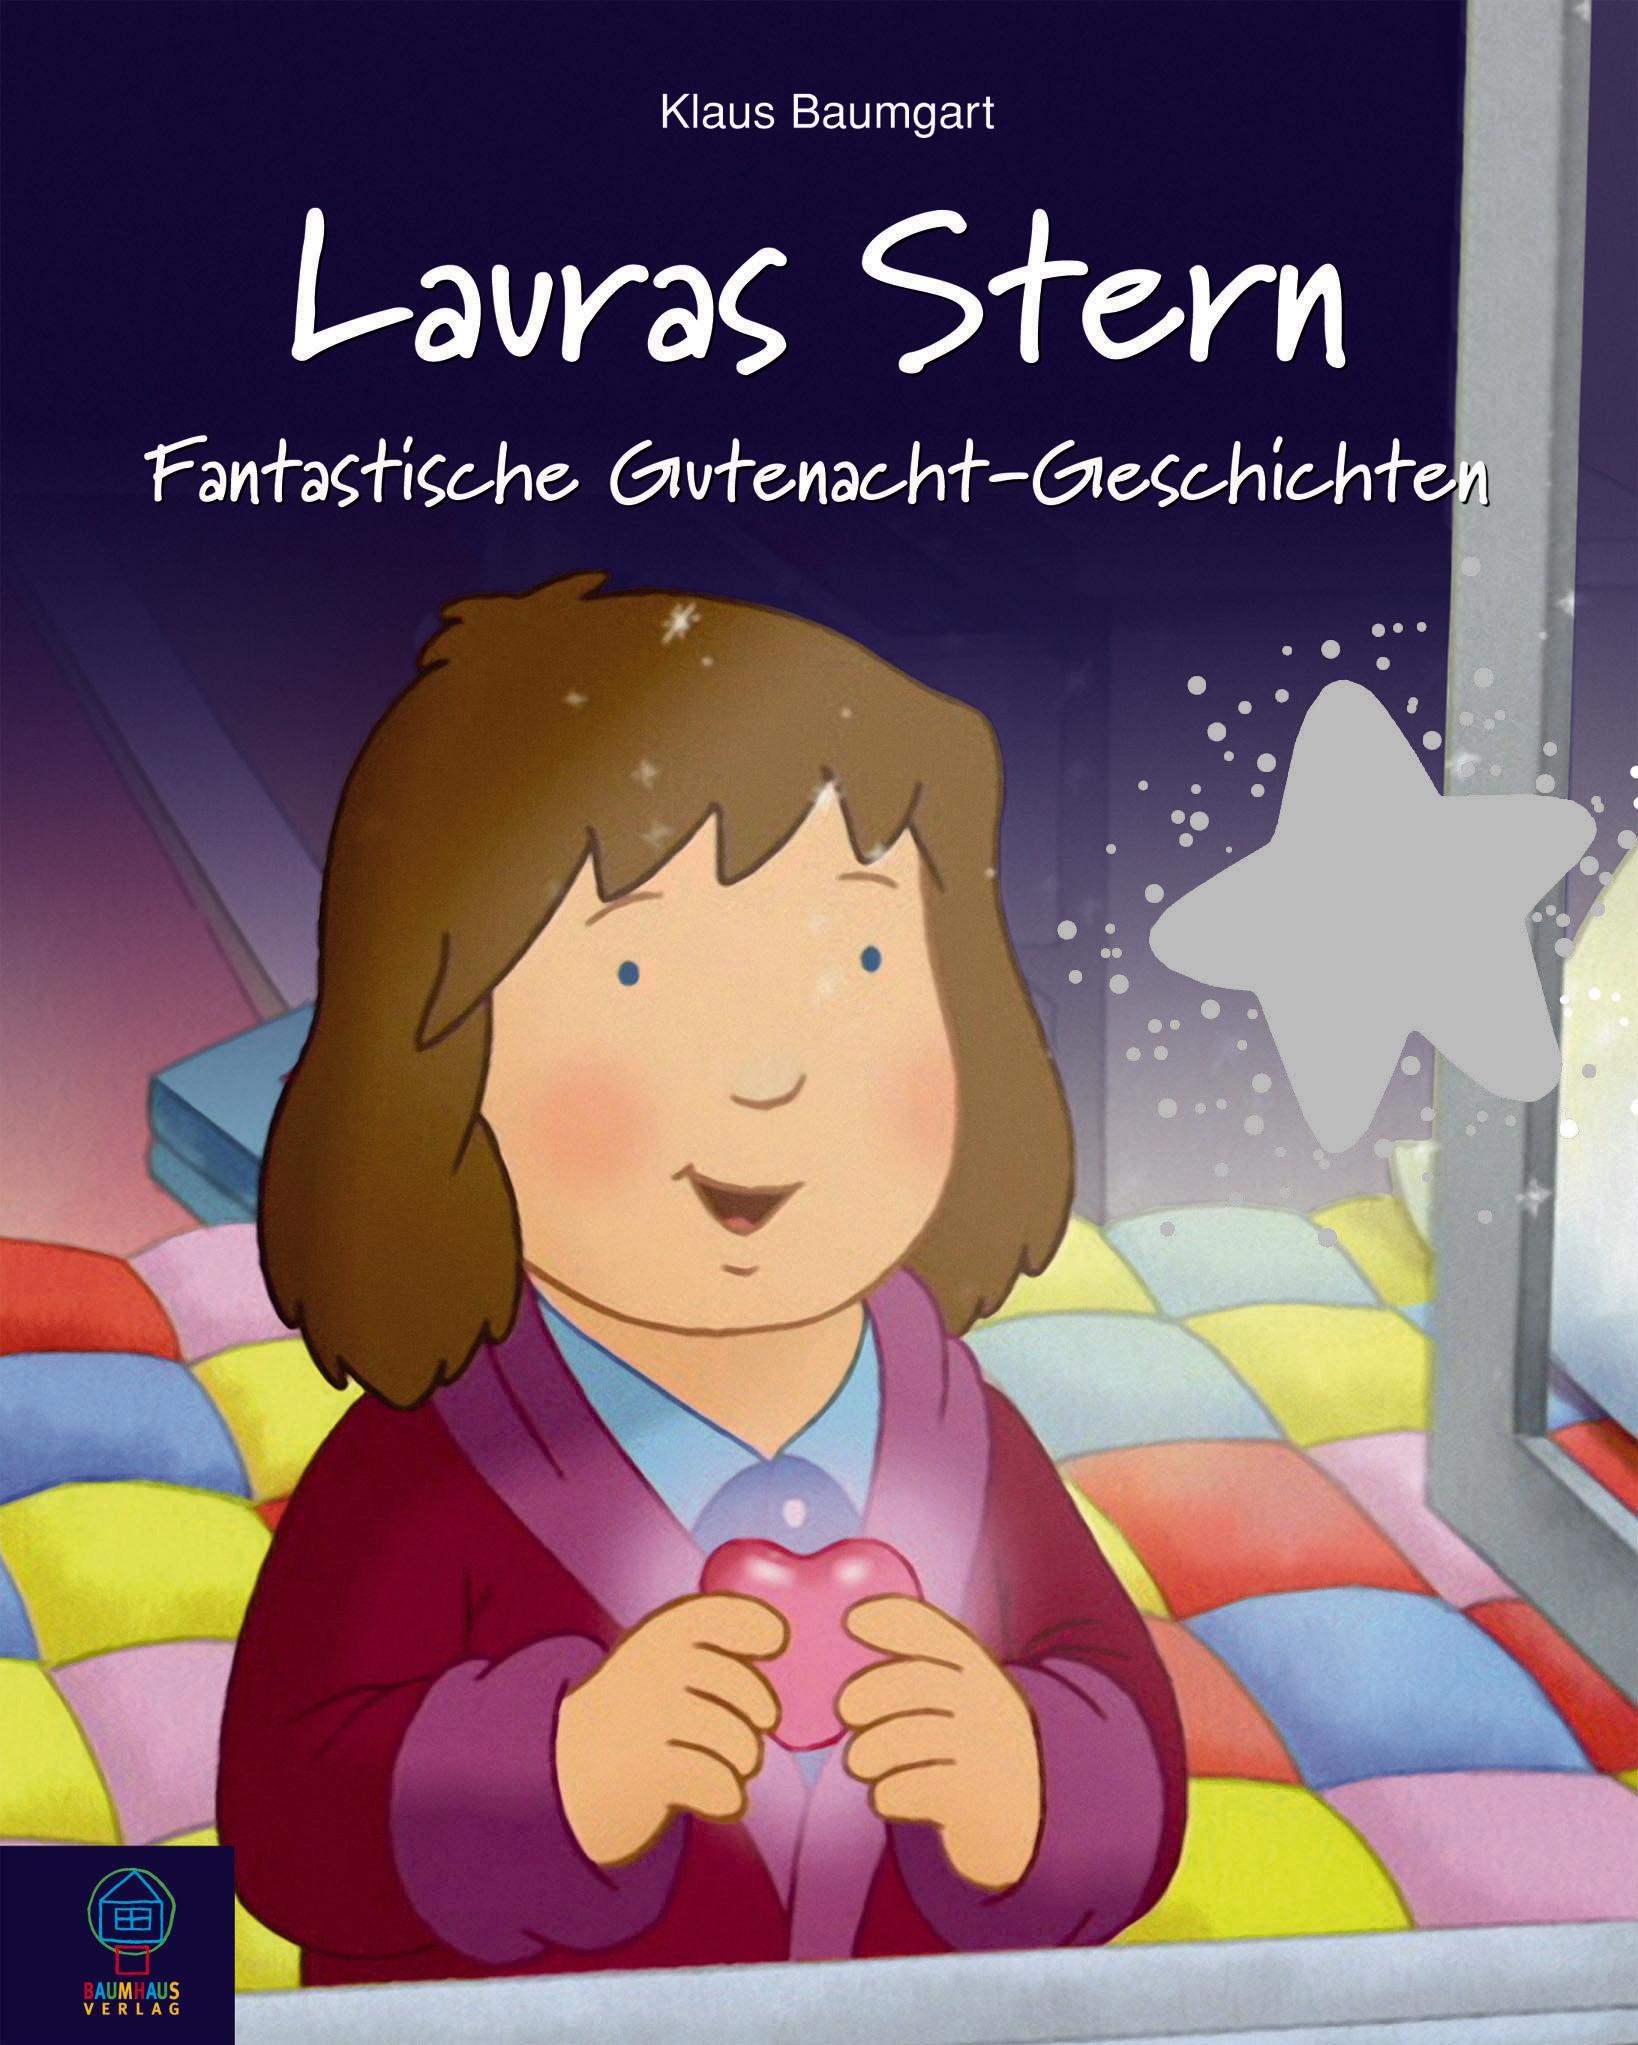 Lauras Stern: Fantasievolle Gutenacht-Geschichten Cornelia Neudert 9783833900921 - Bild 1 von 1